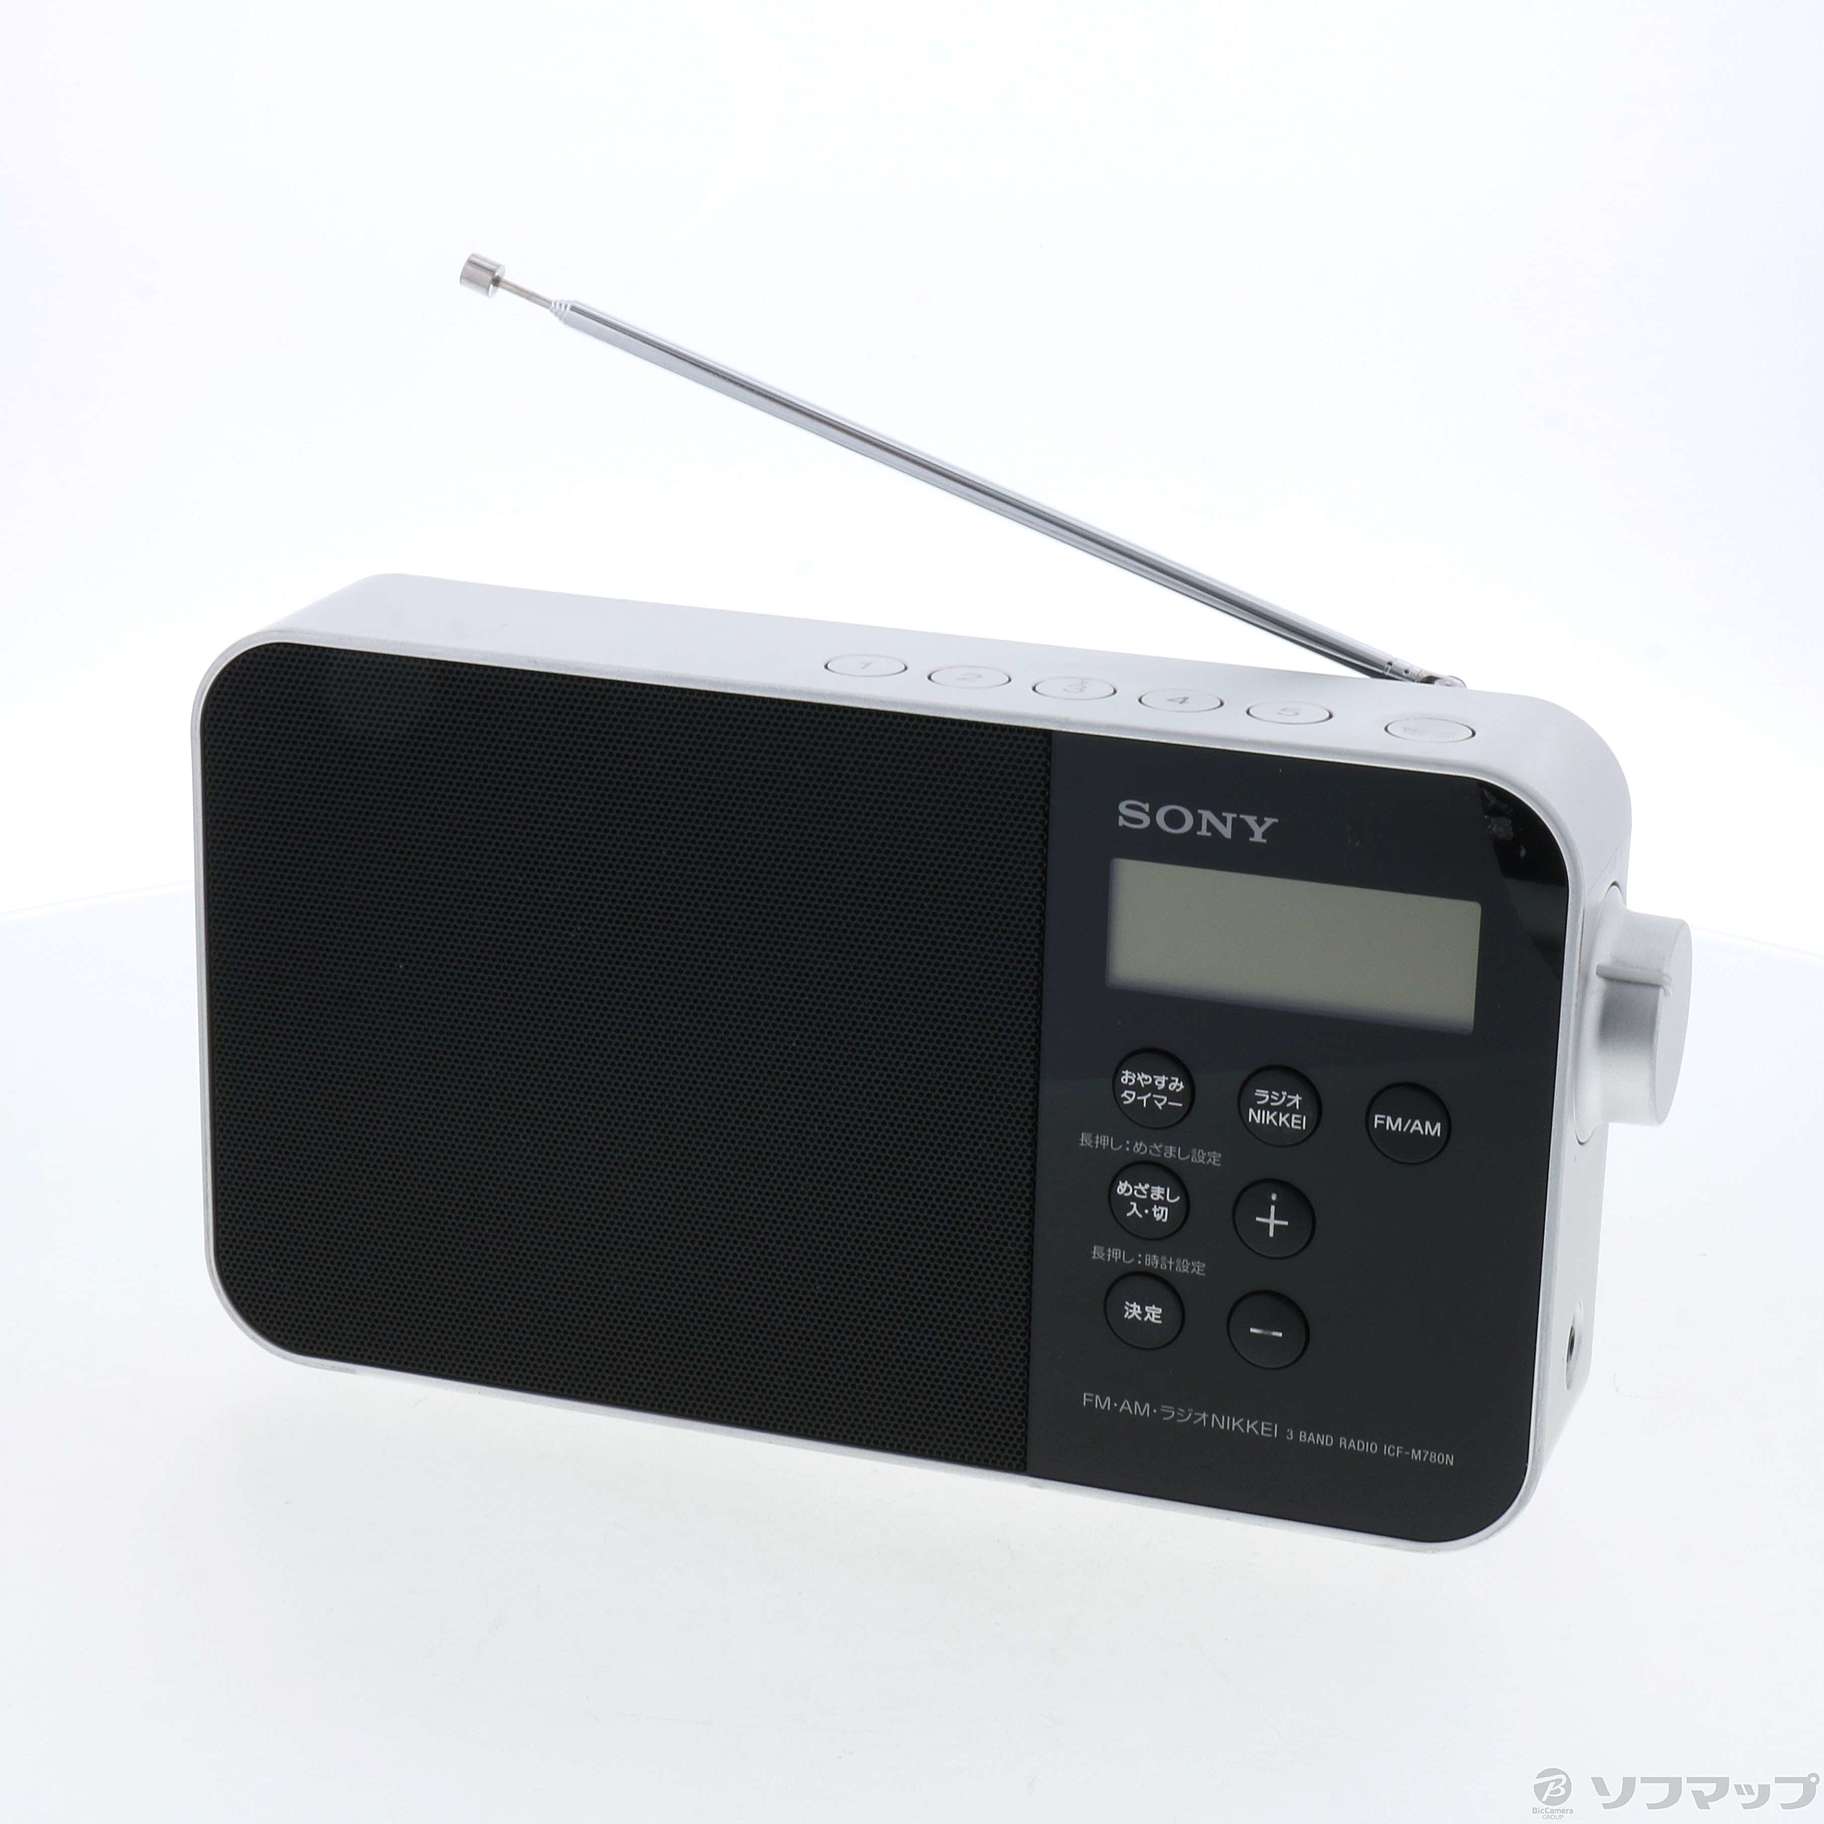 〔展示品〕 ICF-M780N ポータブルラジオ